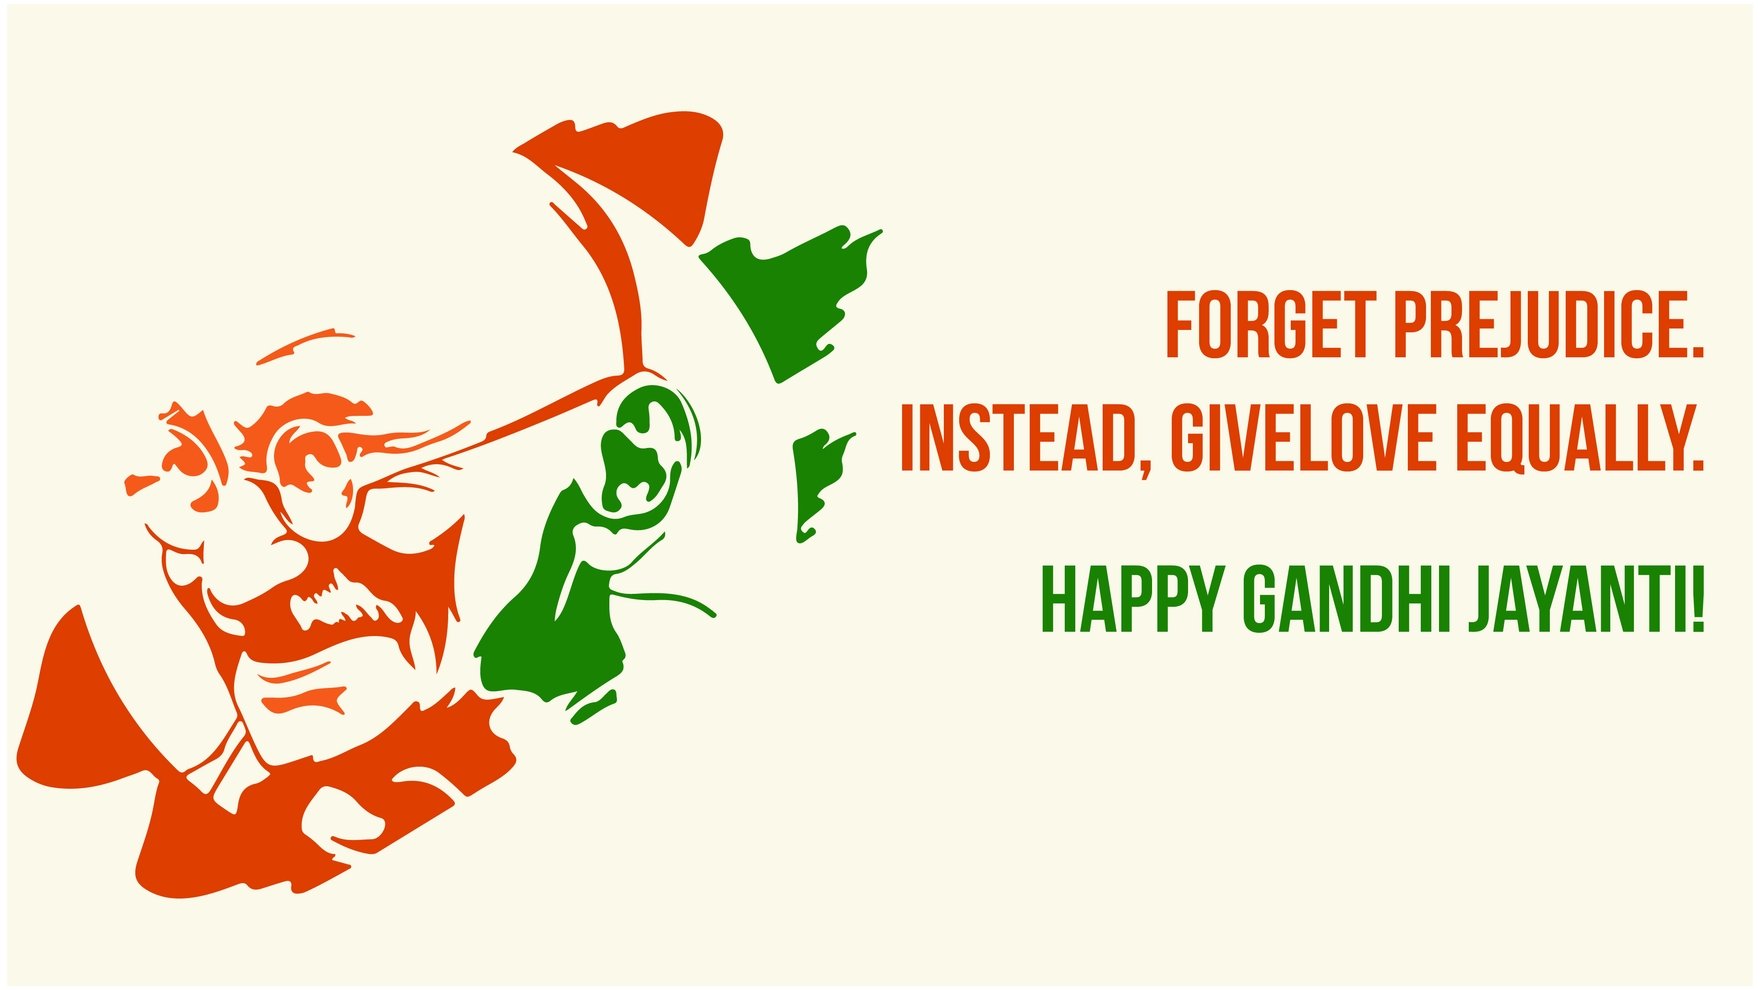 Free Gandhi Jayanti Greeting Card Background